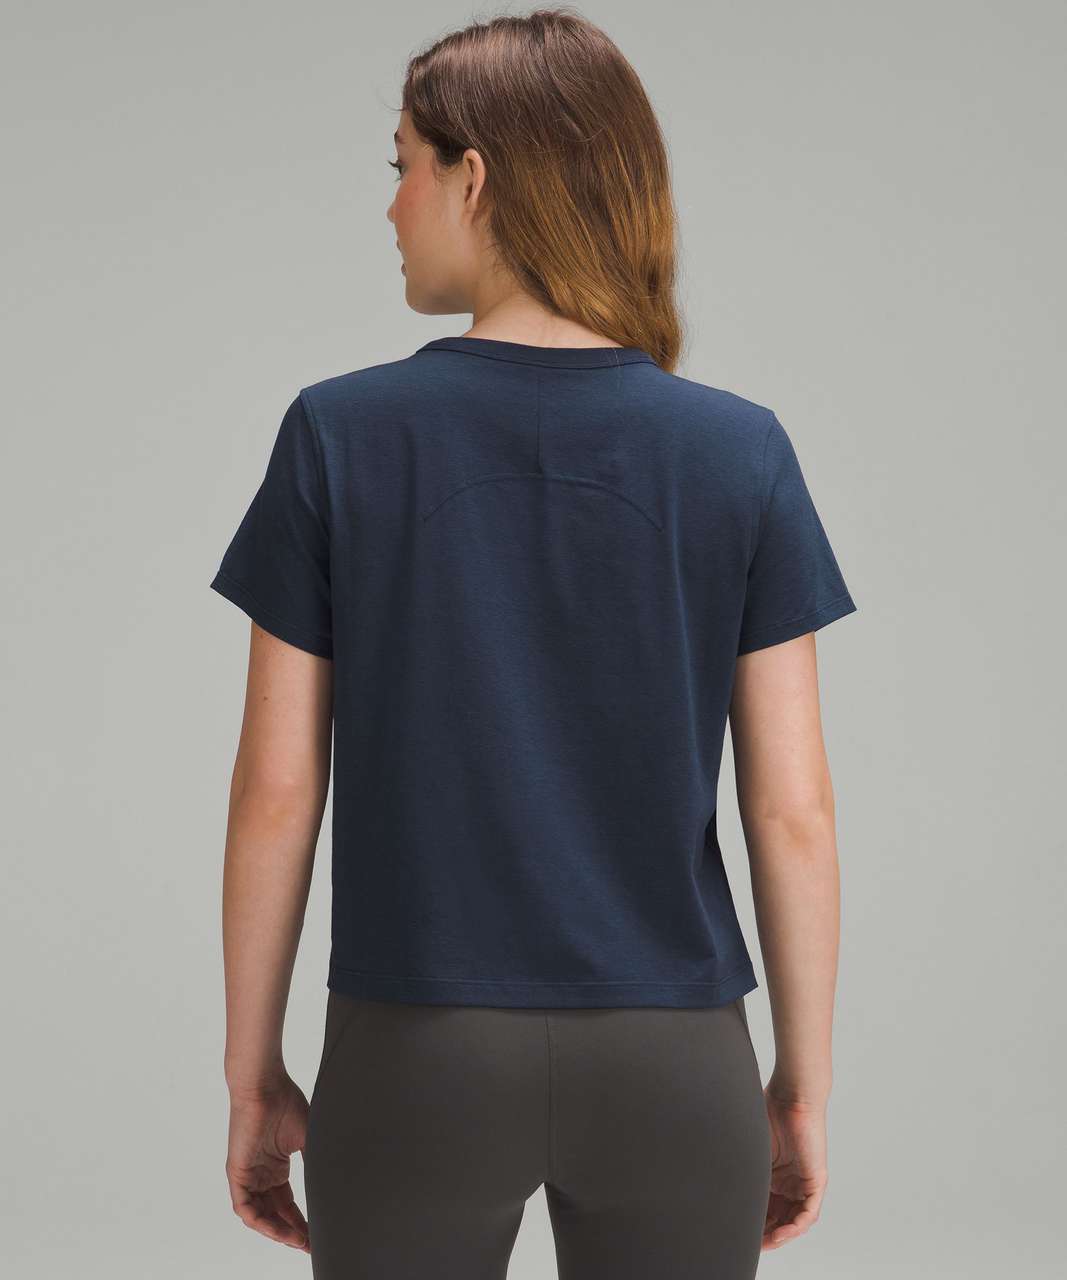 Lululemon Classic-Fit Cotton-Blend T-Shirt - True Navy